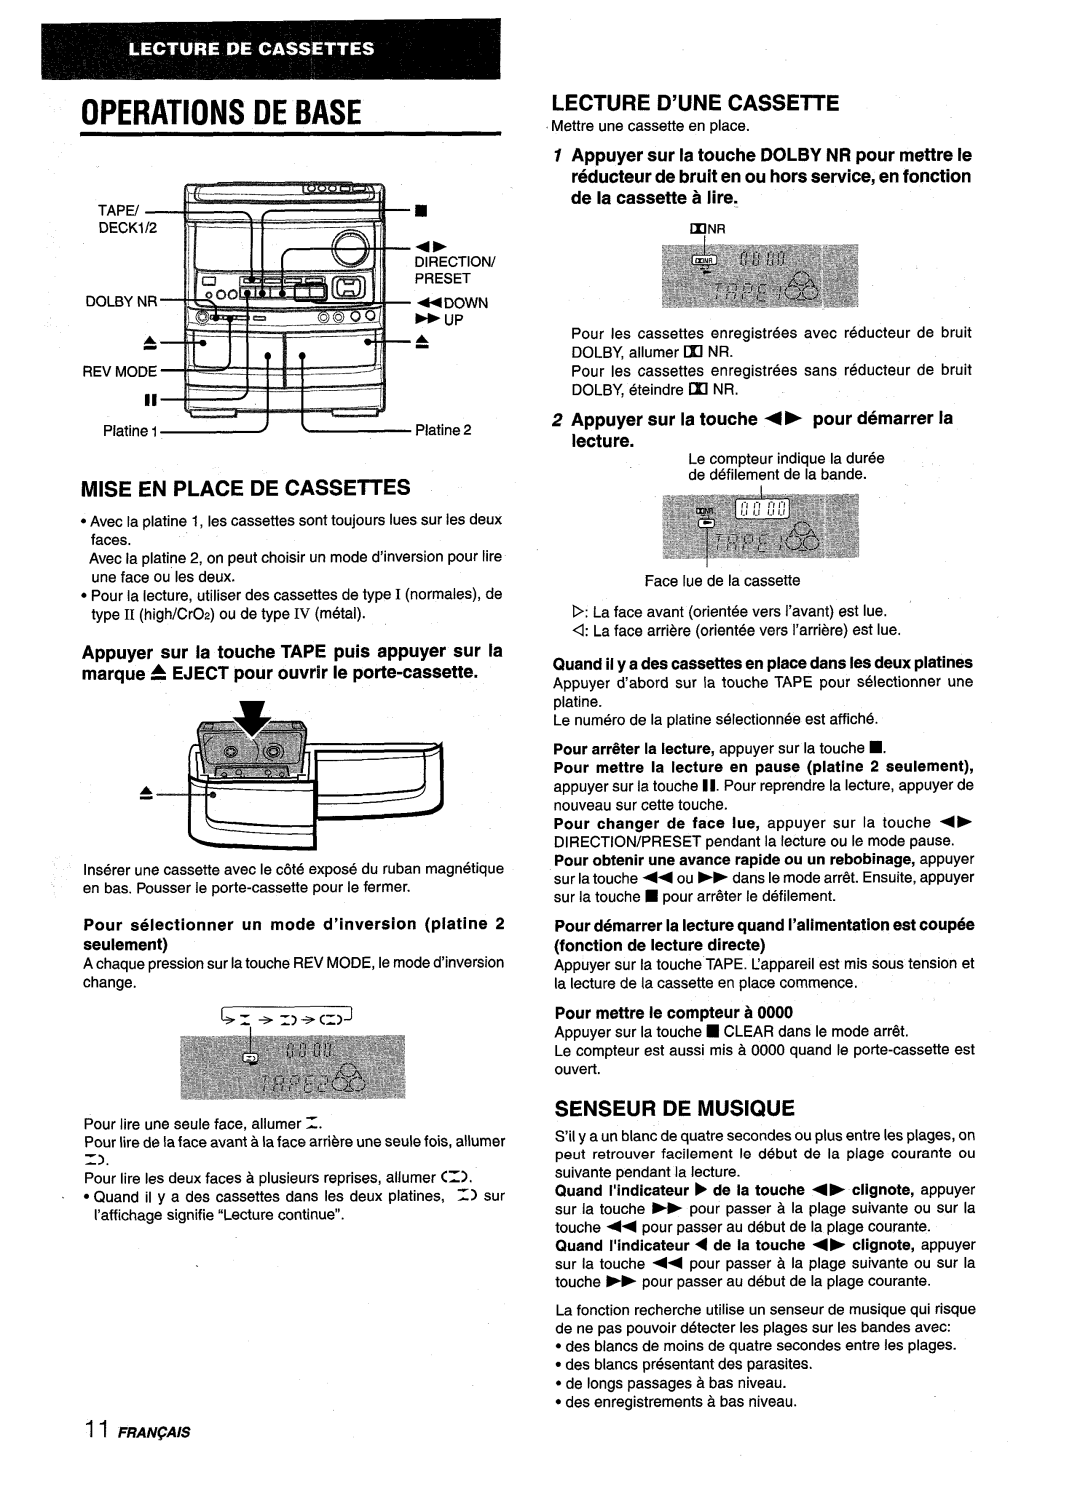 Aiwa NSX-V9000 manual Operations De Base, Mise En Place De Cassettes, Lecture D’Une Cassette, Senseur De Musique 